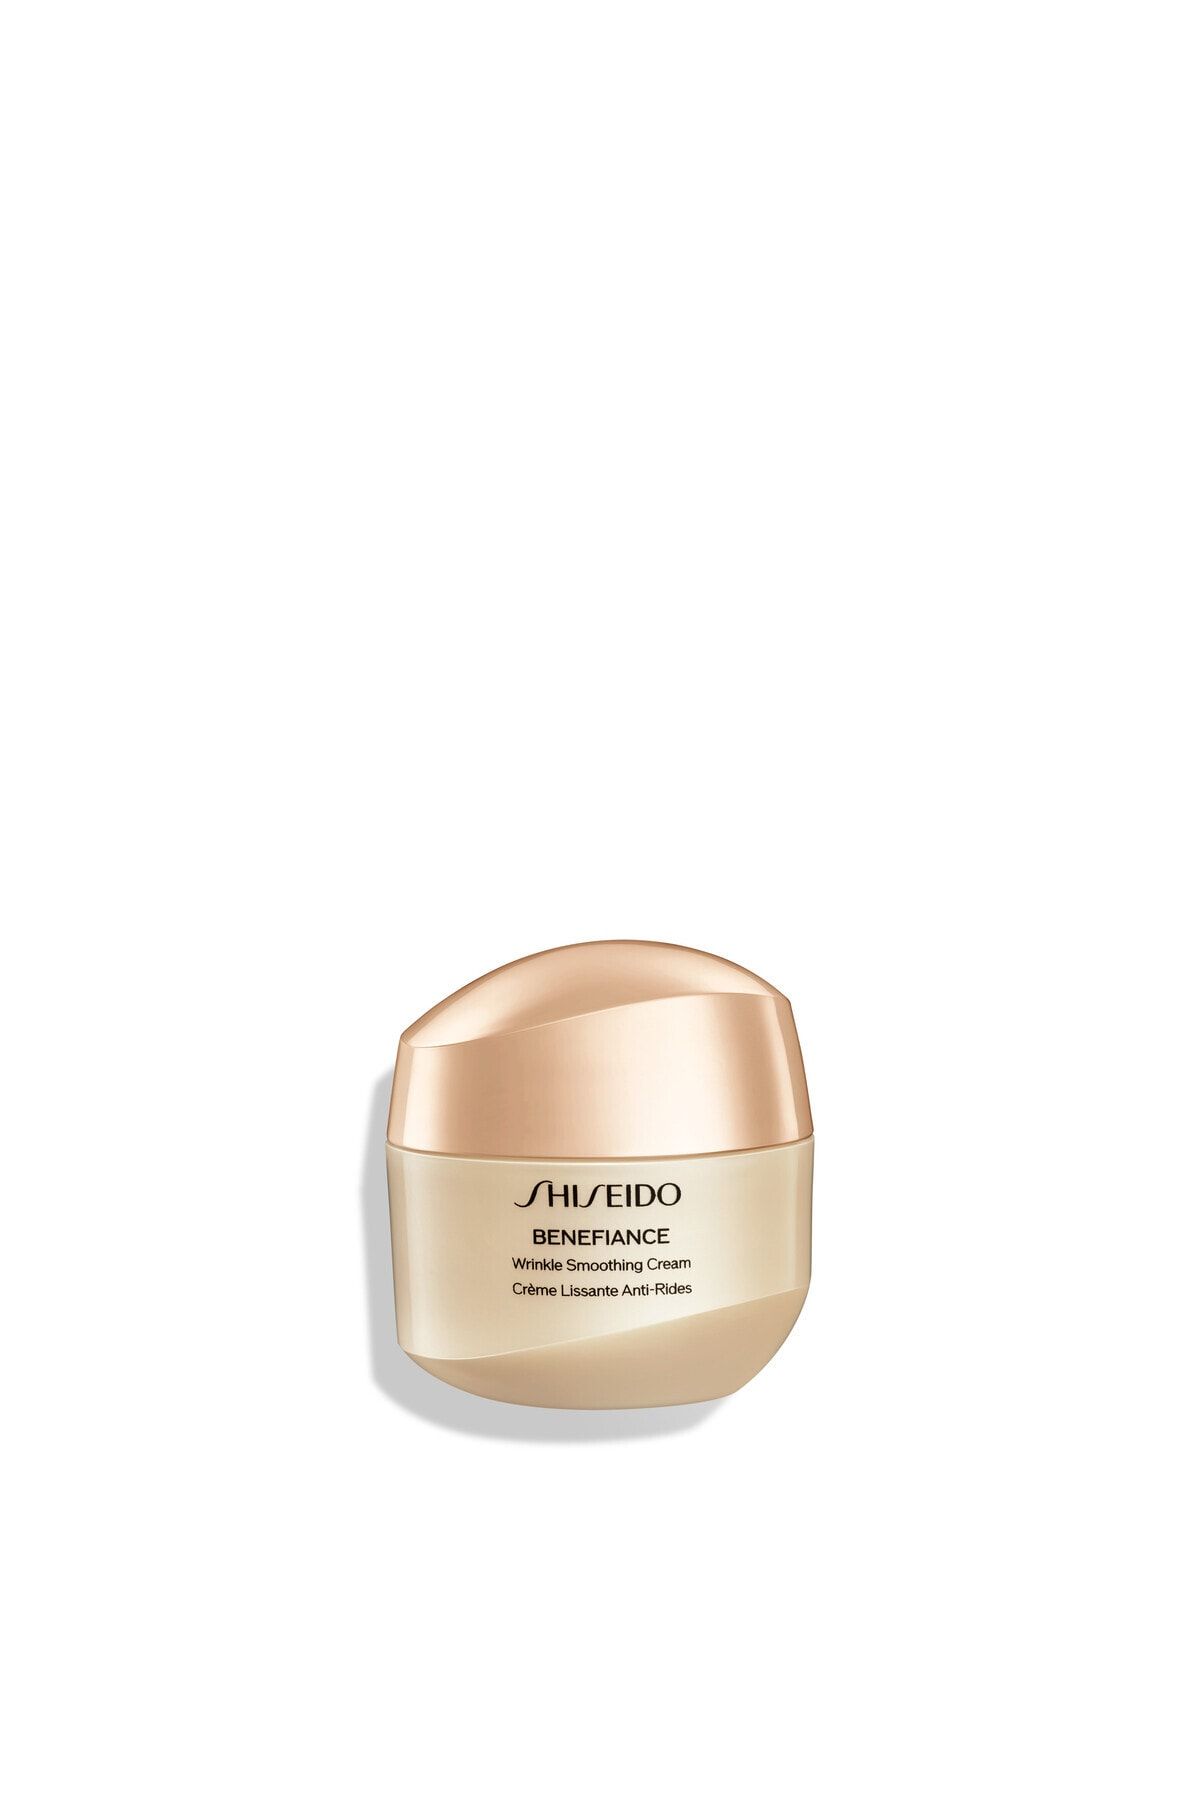 Shiseido Benefıance Wrinkle Smoothing Cream